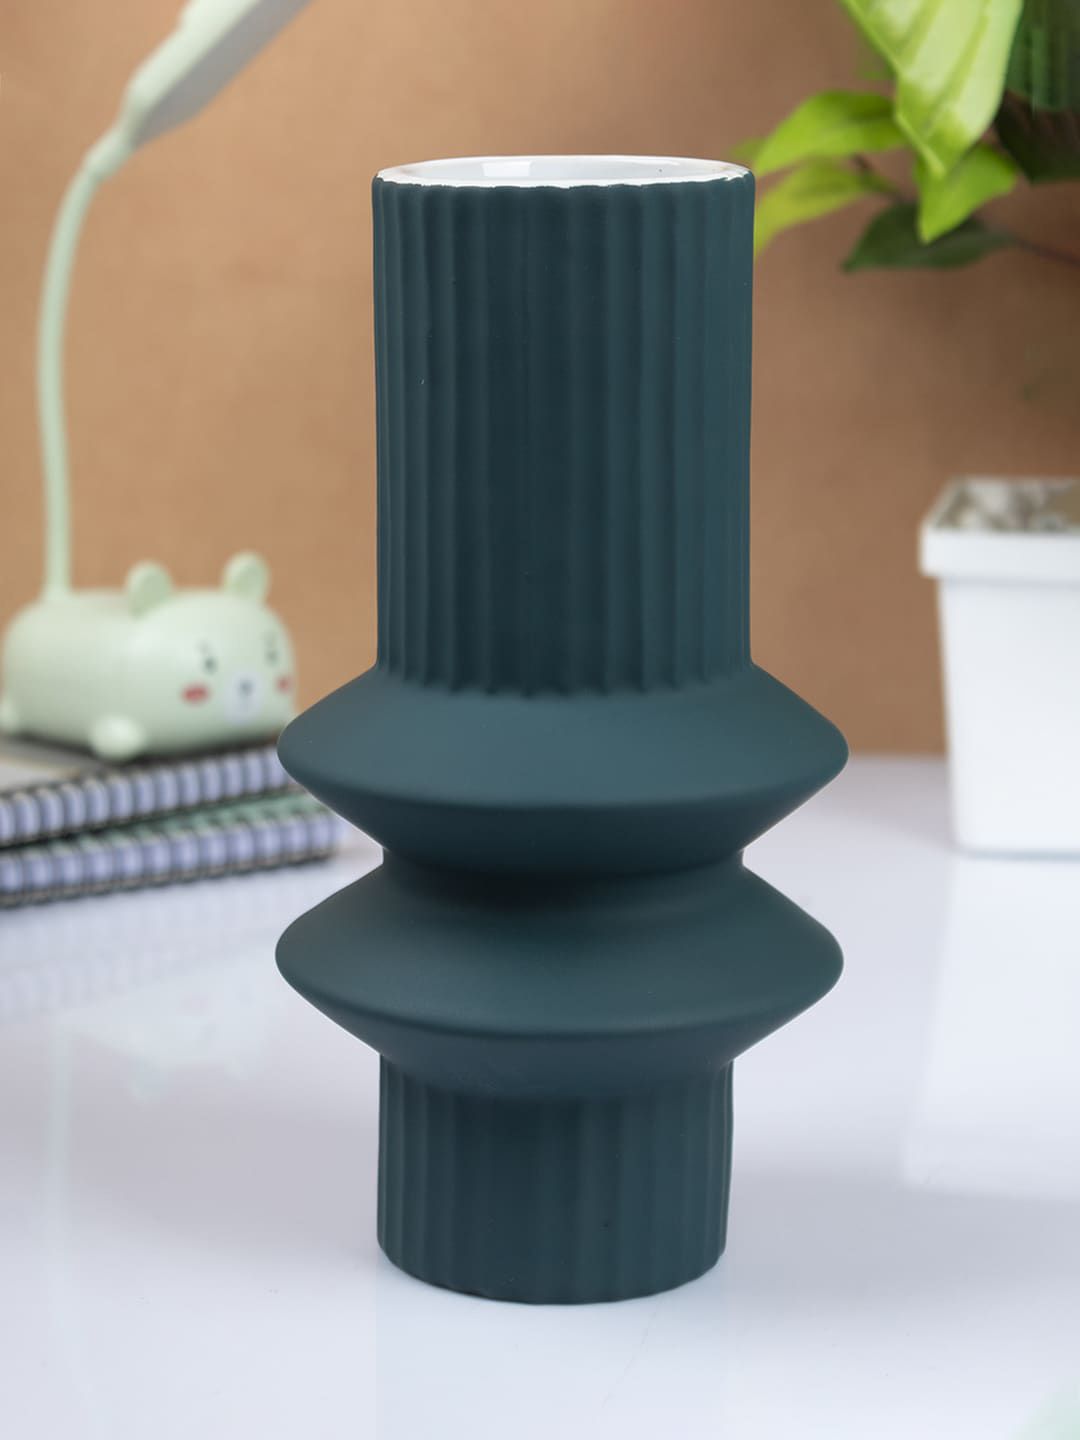 MARKET99 Sea Green Textured Ceramic Vases Price in India